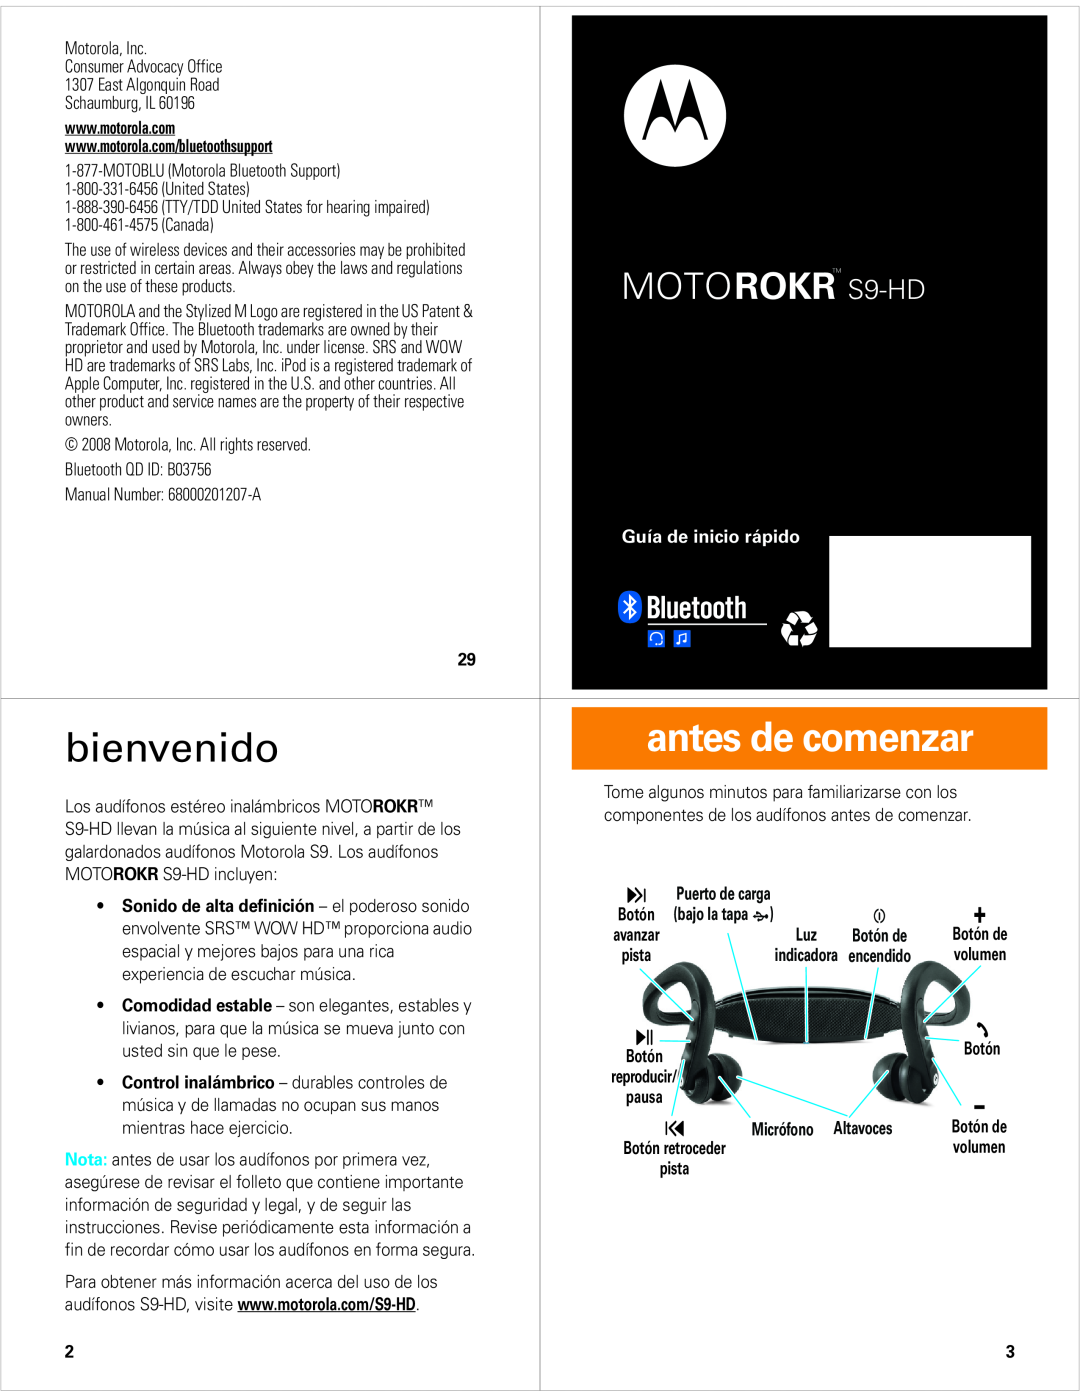 Motorola quick start bienvenido, antes de comenzar, MOTOROKR S9-HD, Guía de inicio rápido 